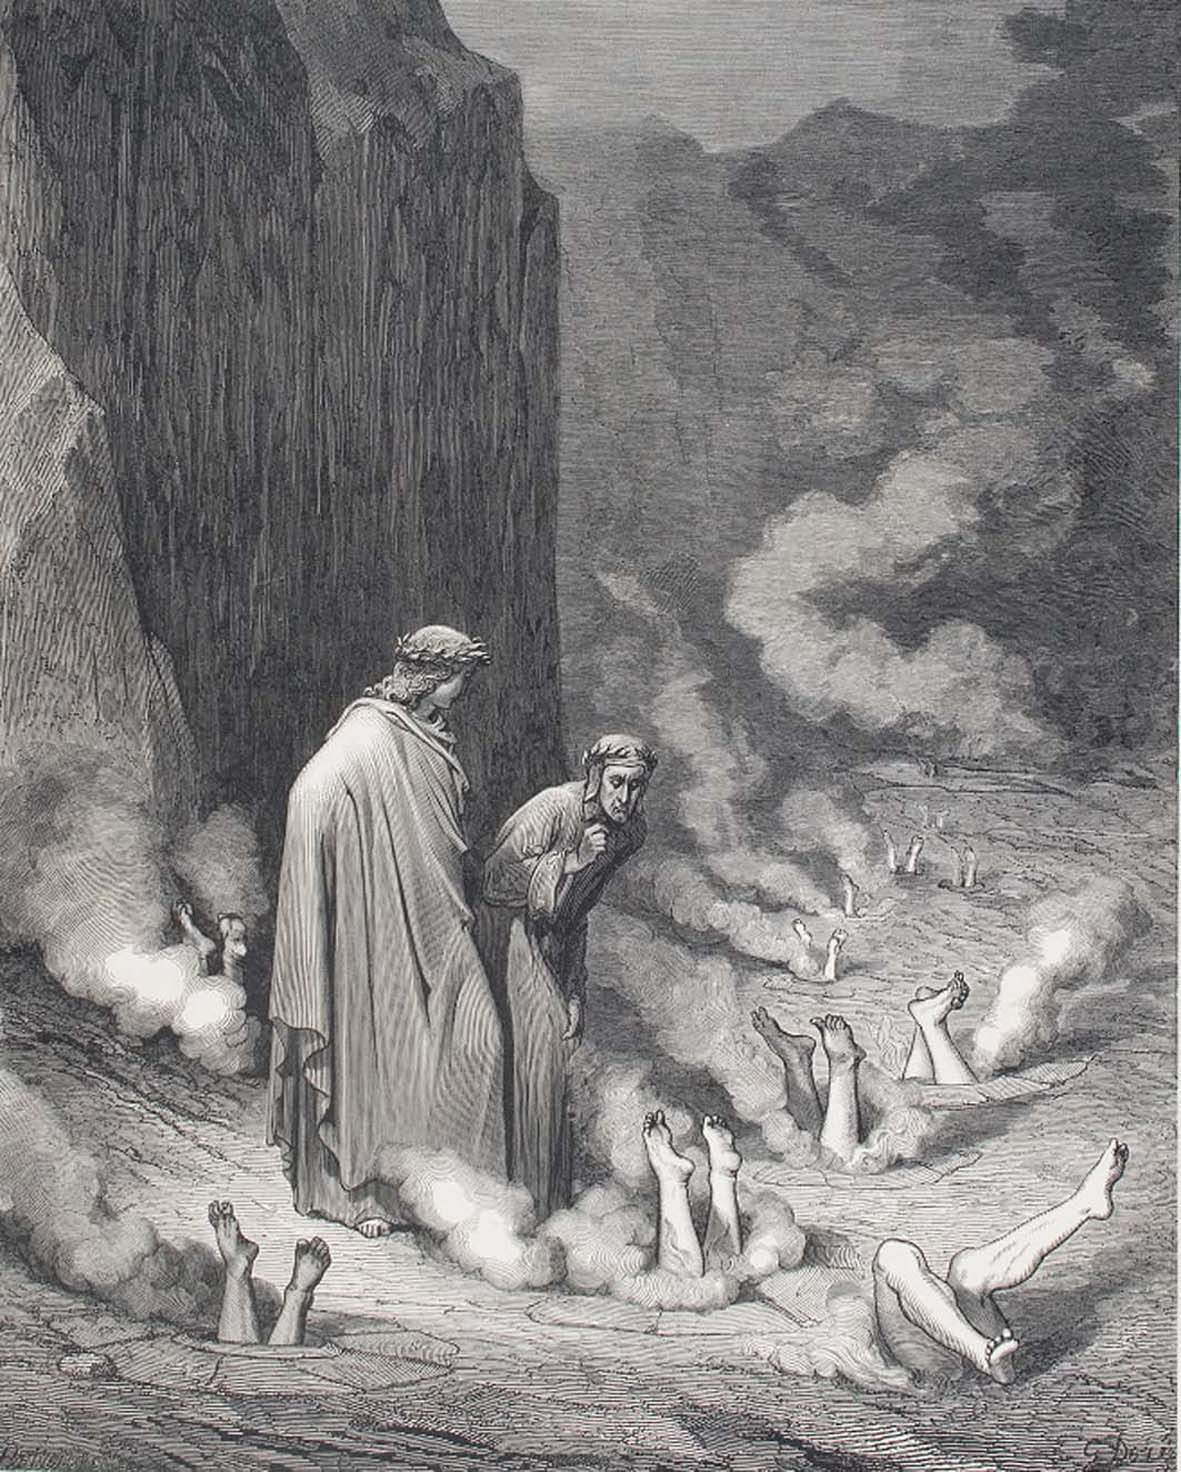 Visioni dell'Inferno: in mostra a Rovigo le illustrazioni di Doré, Rauschenberg e Brand per la Commedia di Dante